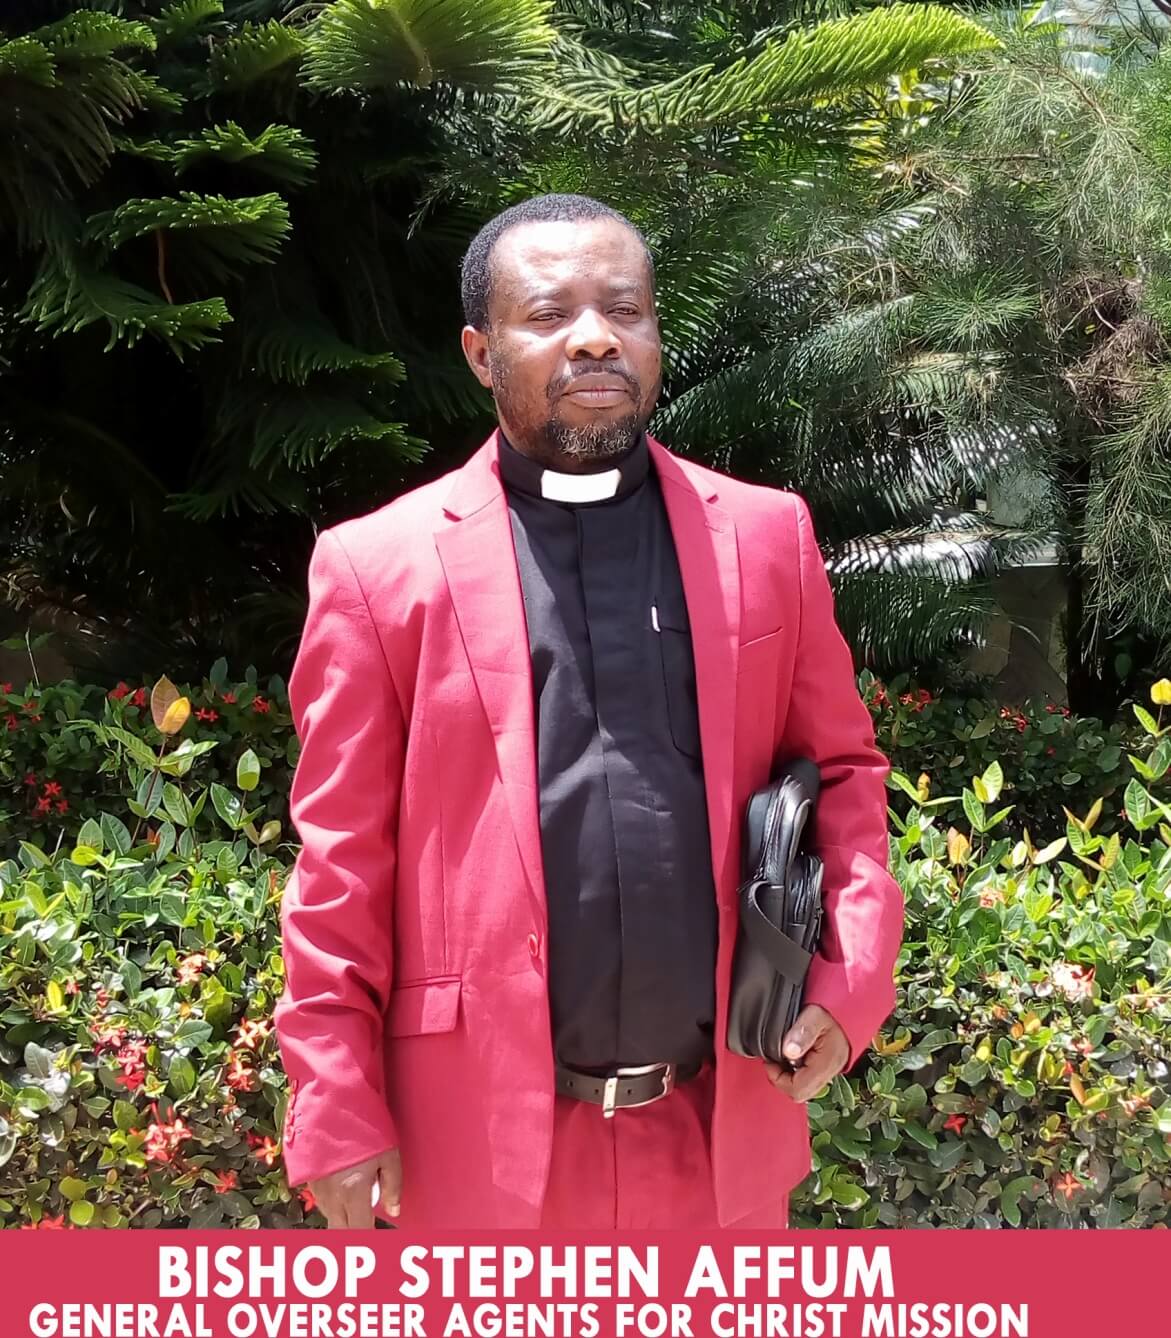 Prosper in the Name of Jesus - Bishop Affum blesses Christians